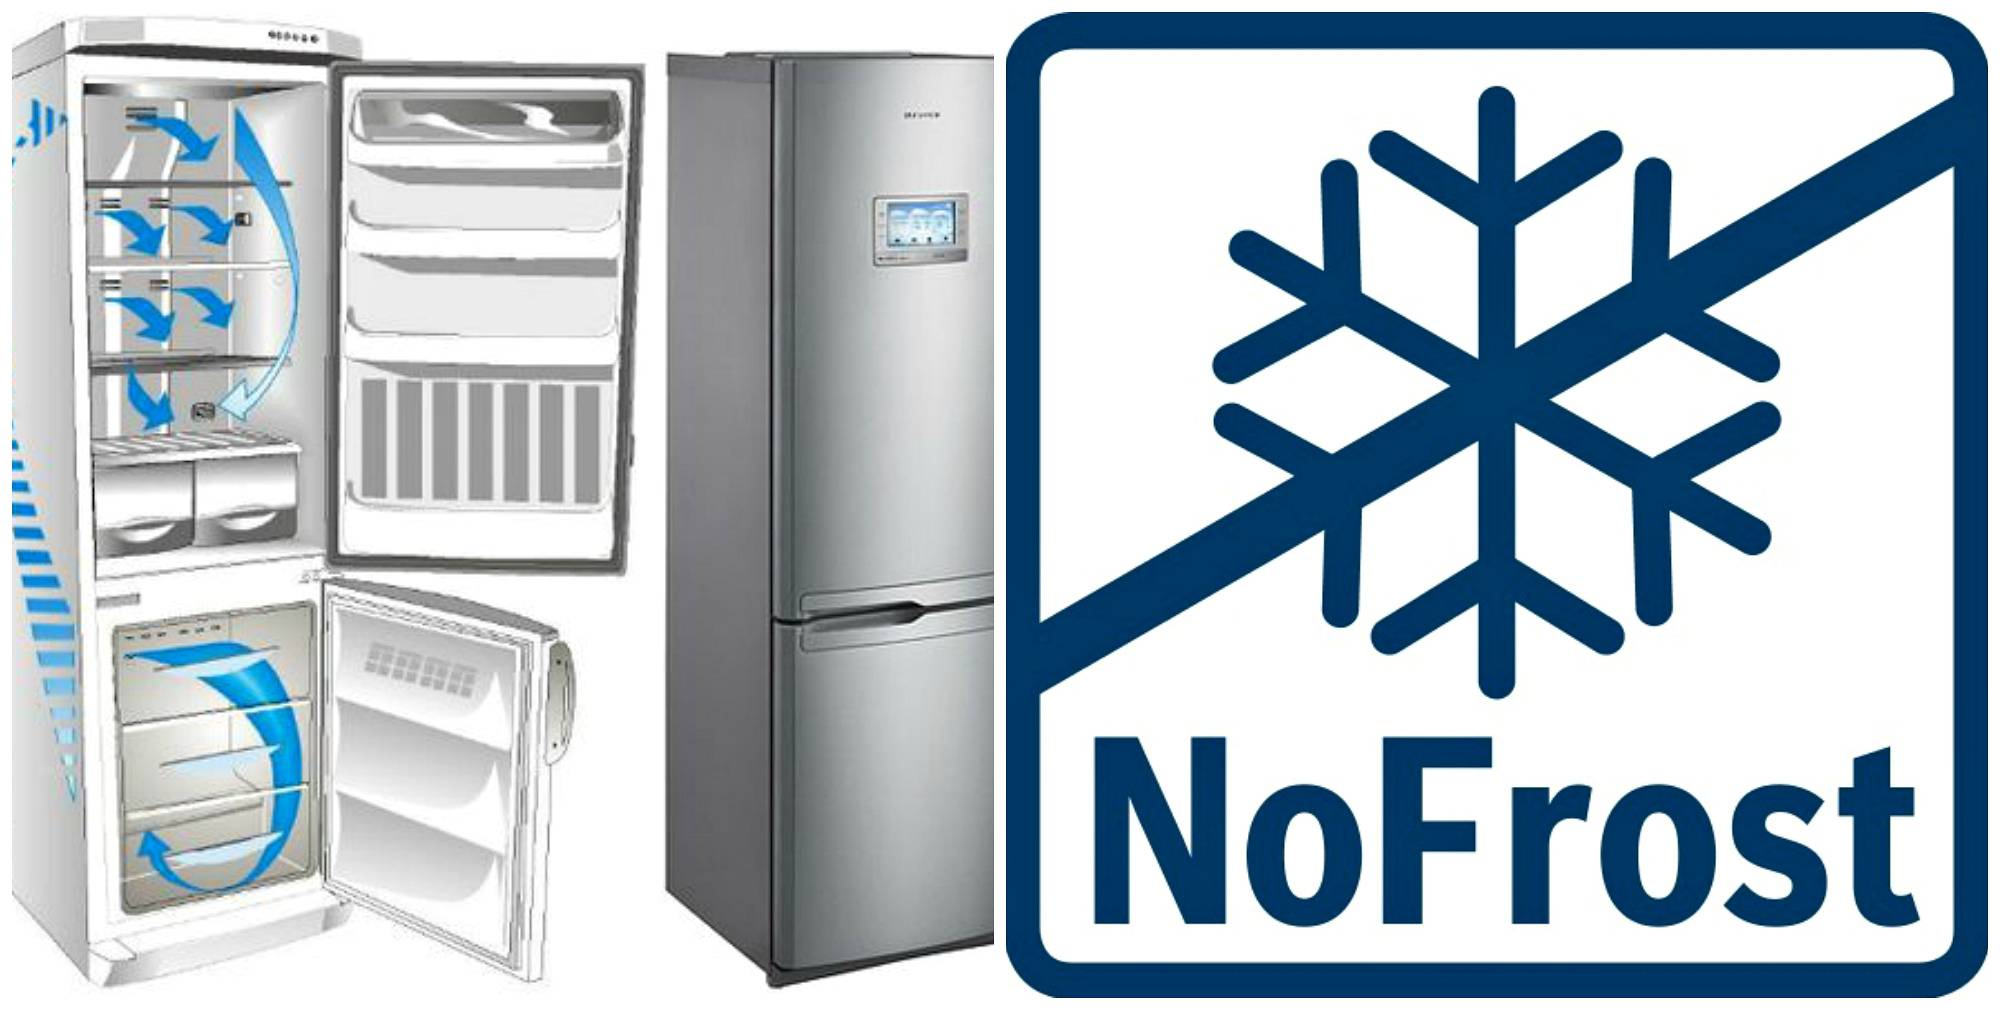 Нужно ли размораживать холодильник no frost: разморозка, надо, с системой, сколько, samsung, правильно, двухкамерный, как часто, lg, indesit, bosch